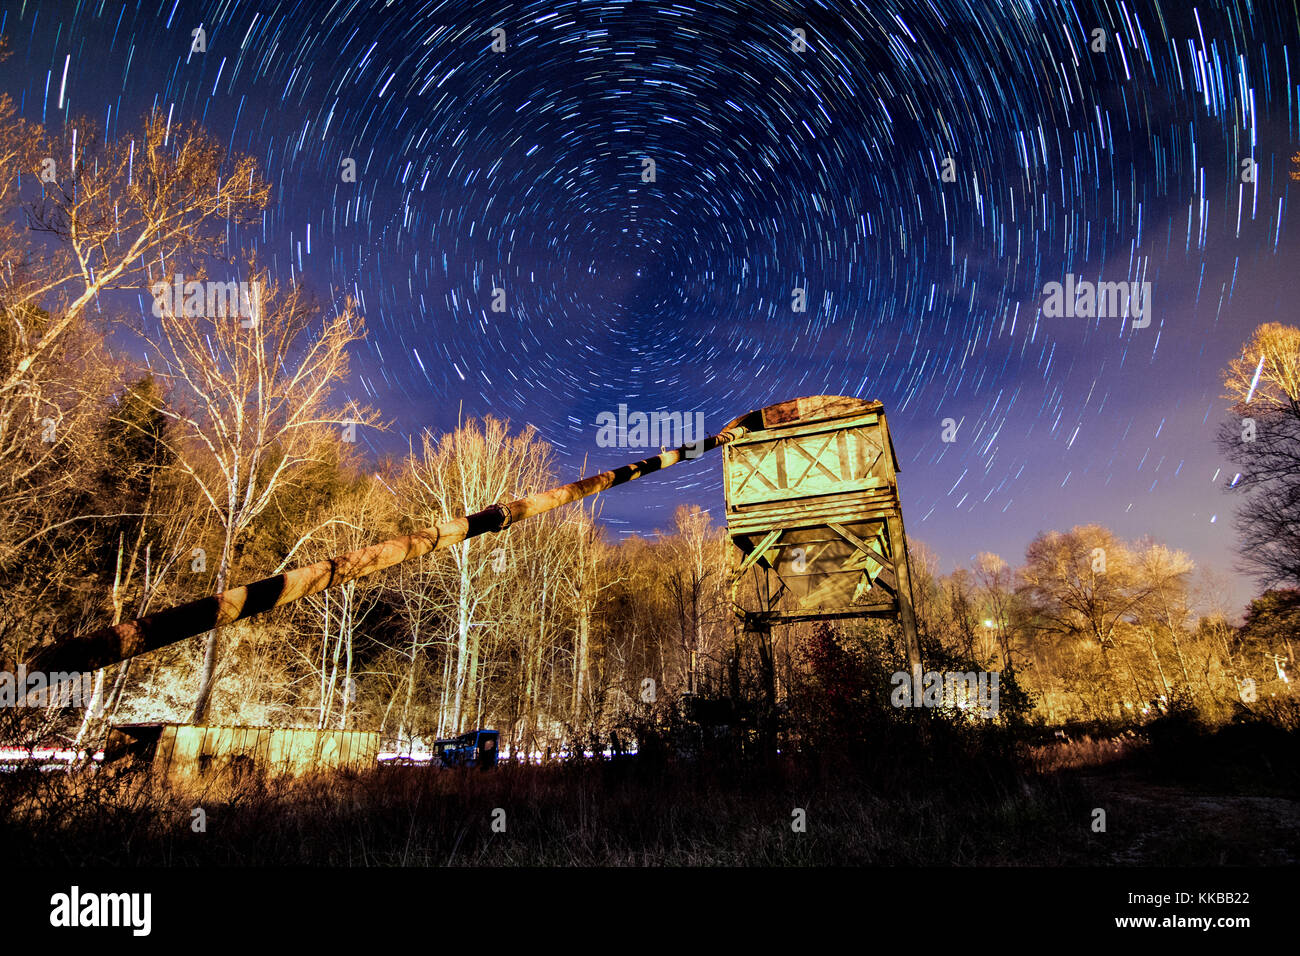 Cette longue exposition image montre star trails dans le ciel nocturne au-dessus d'une scène industrielle. Banque D'Images